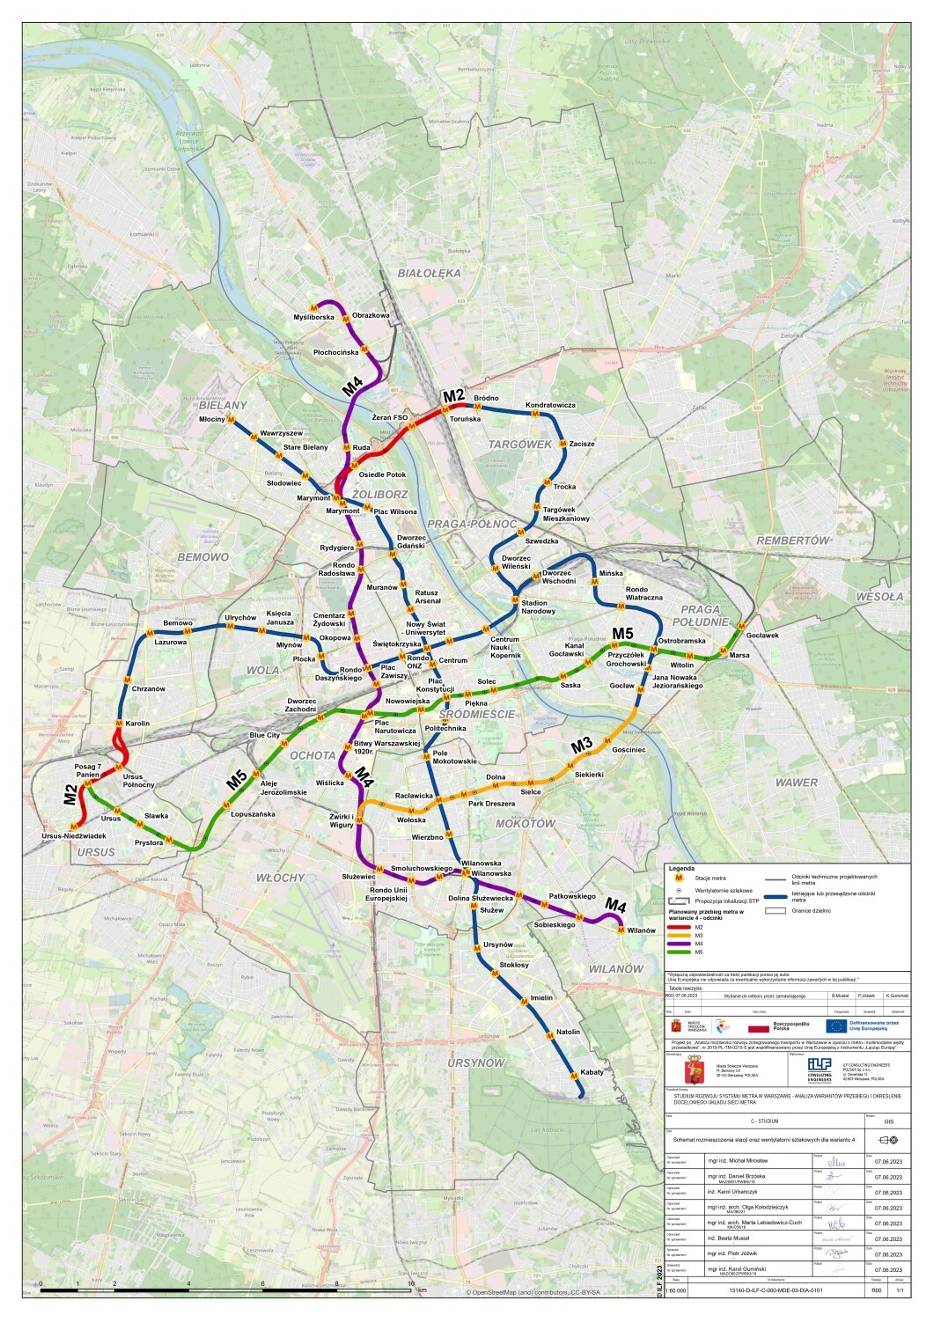 Docelowy kształt sieci metra w Warszawie